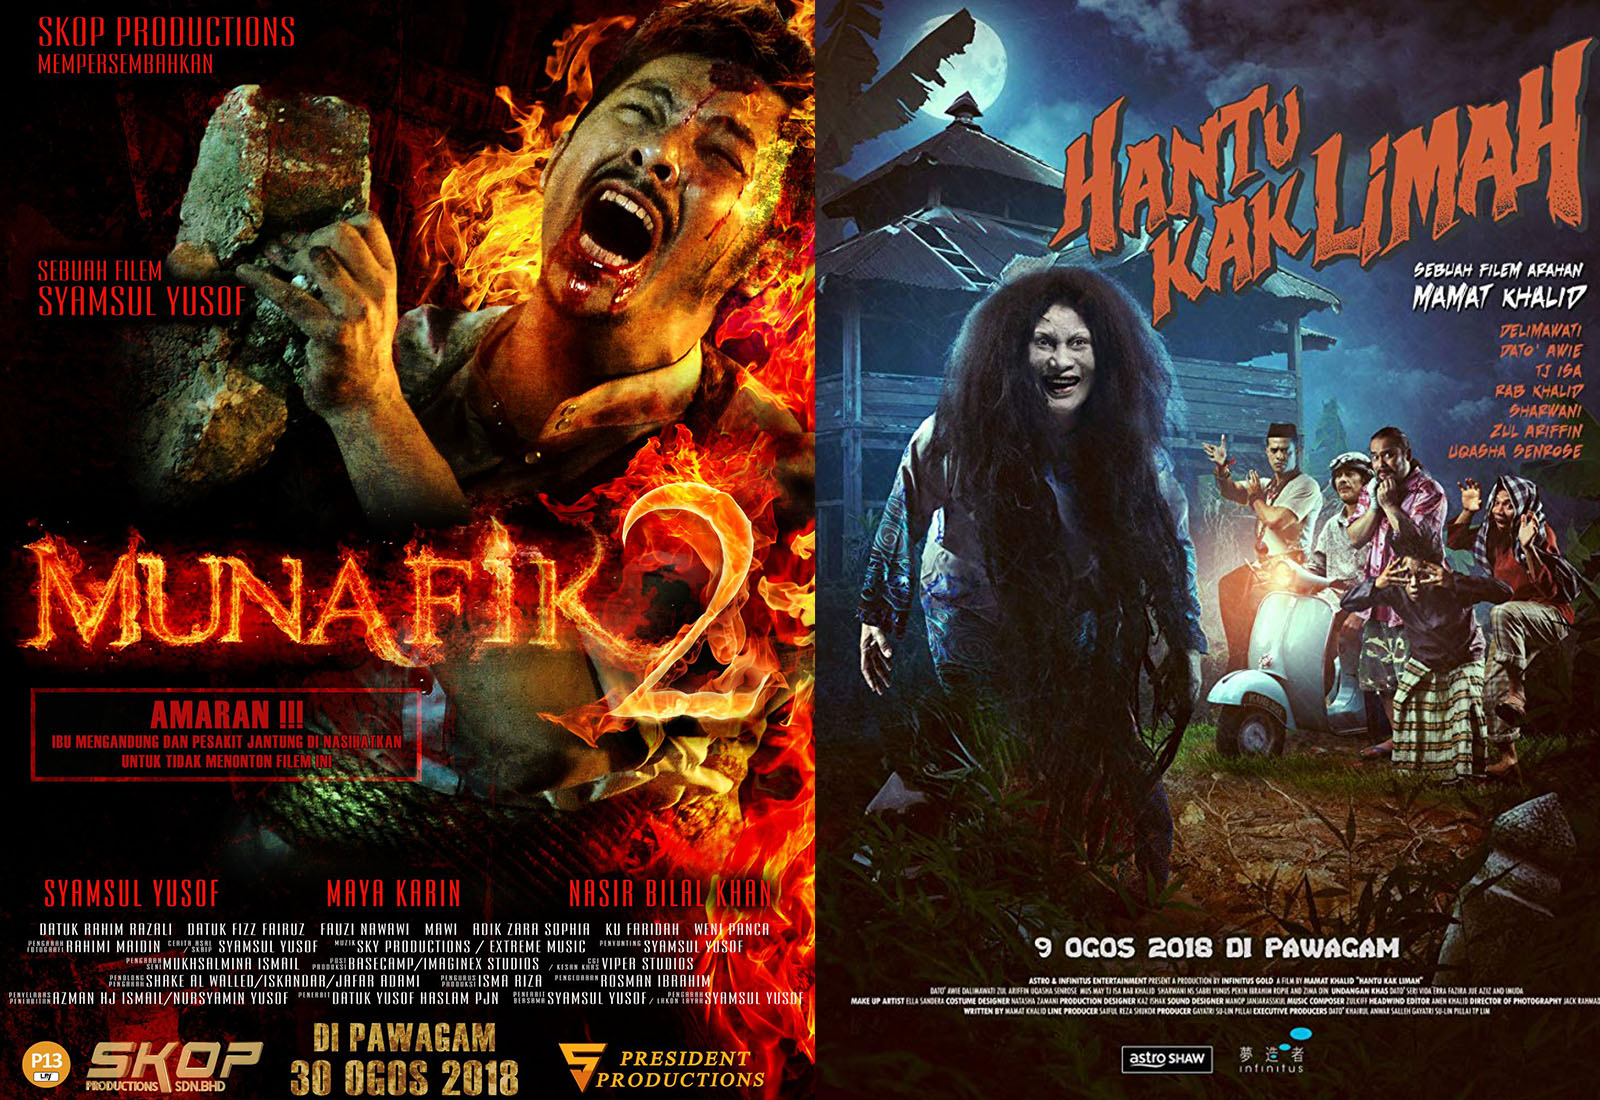 Photo of Munafik 2, HKL Tersenarai Top 20 Filem Paling Laris Di Malaysia